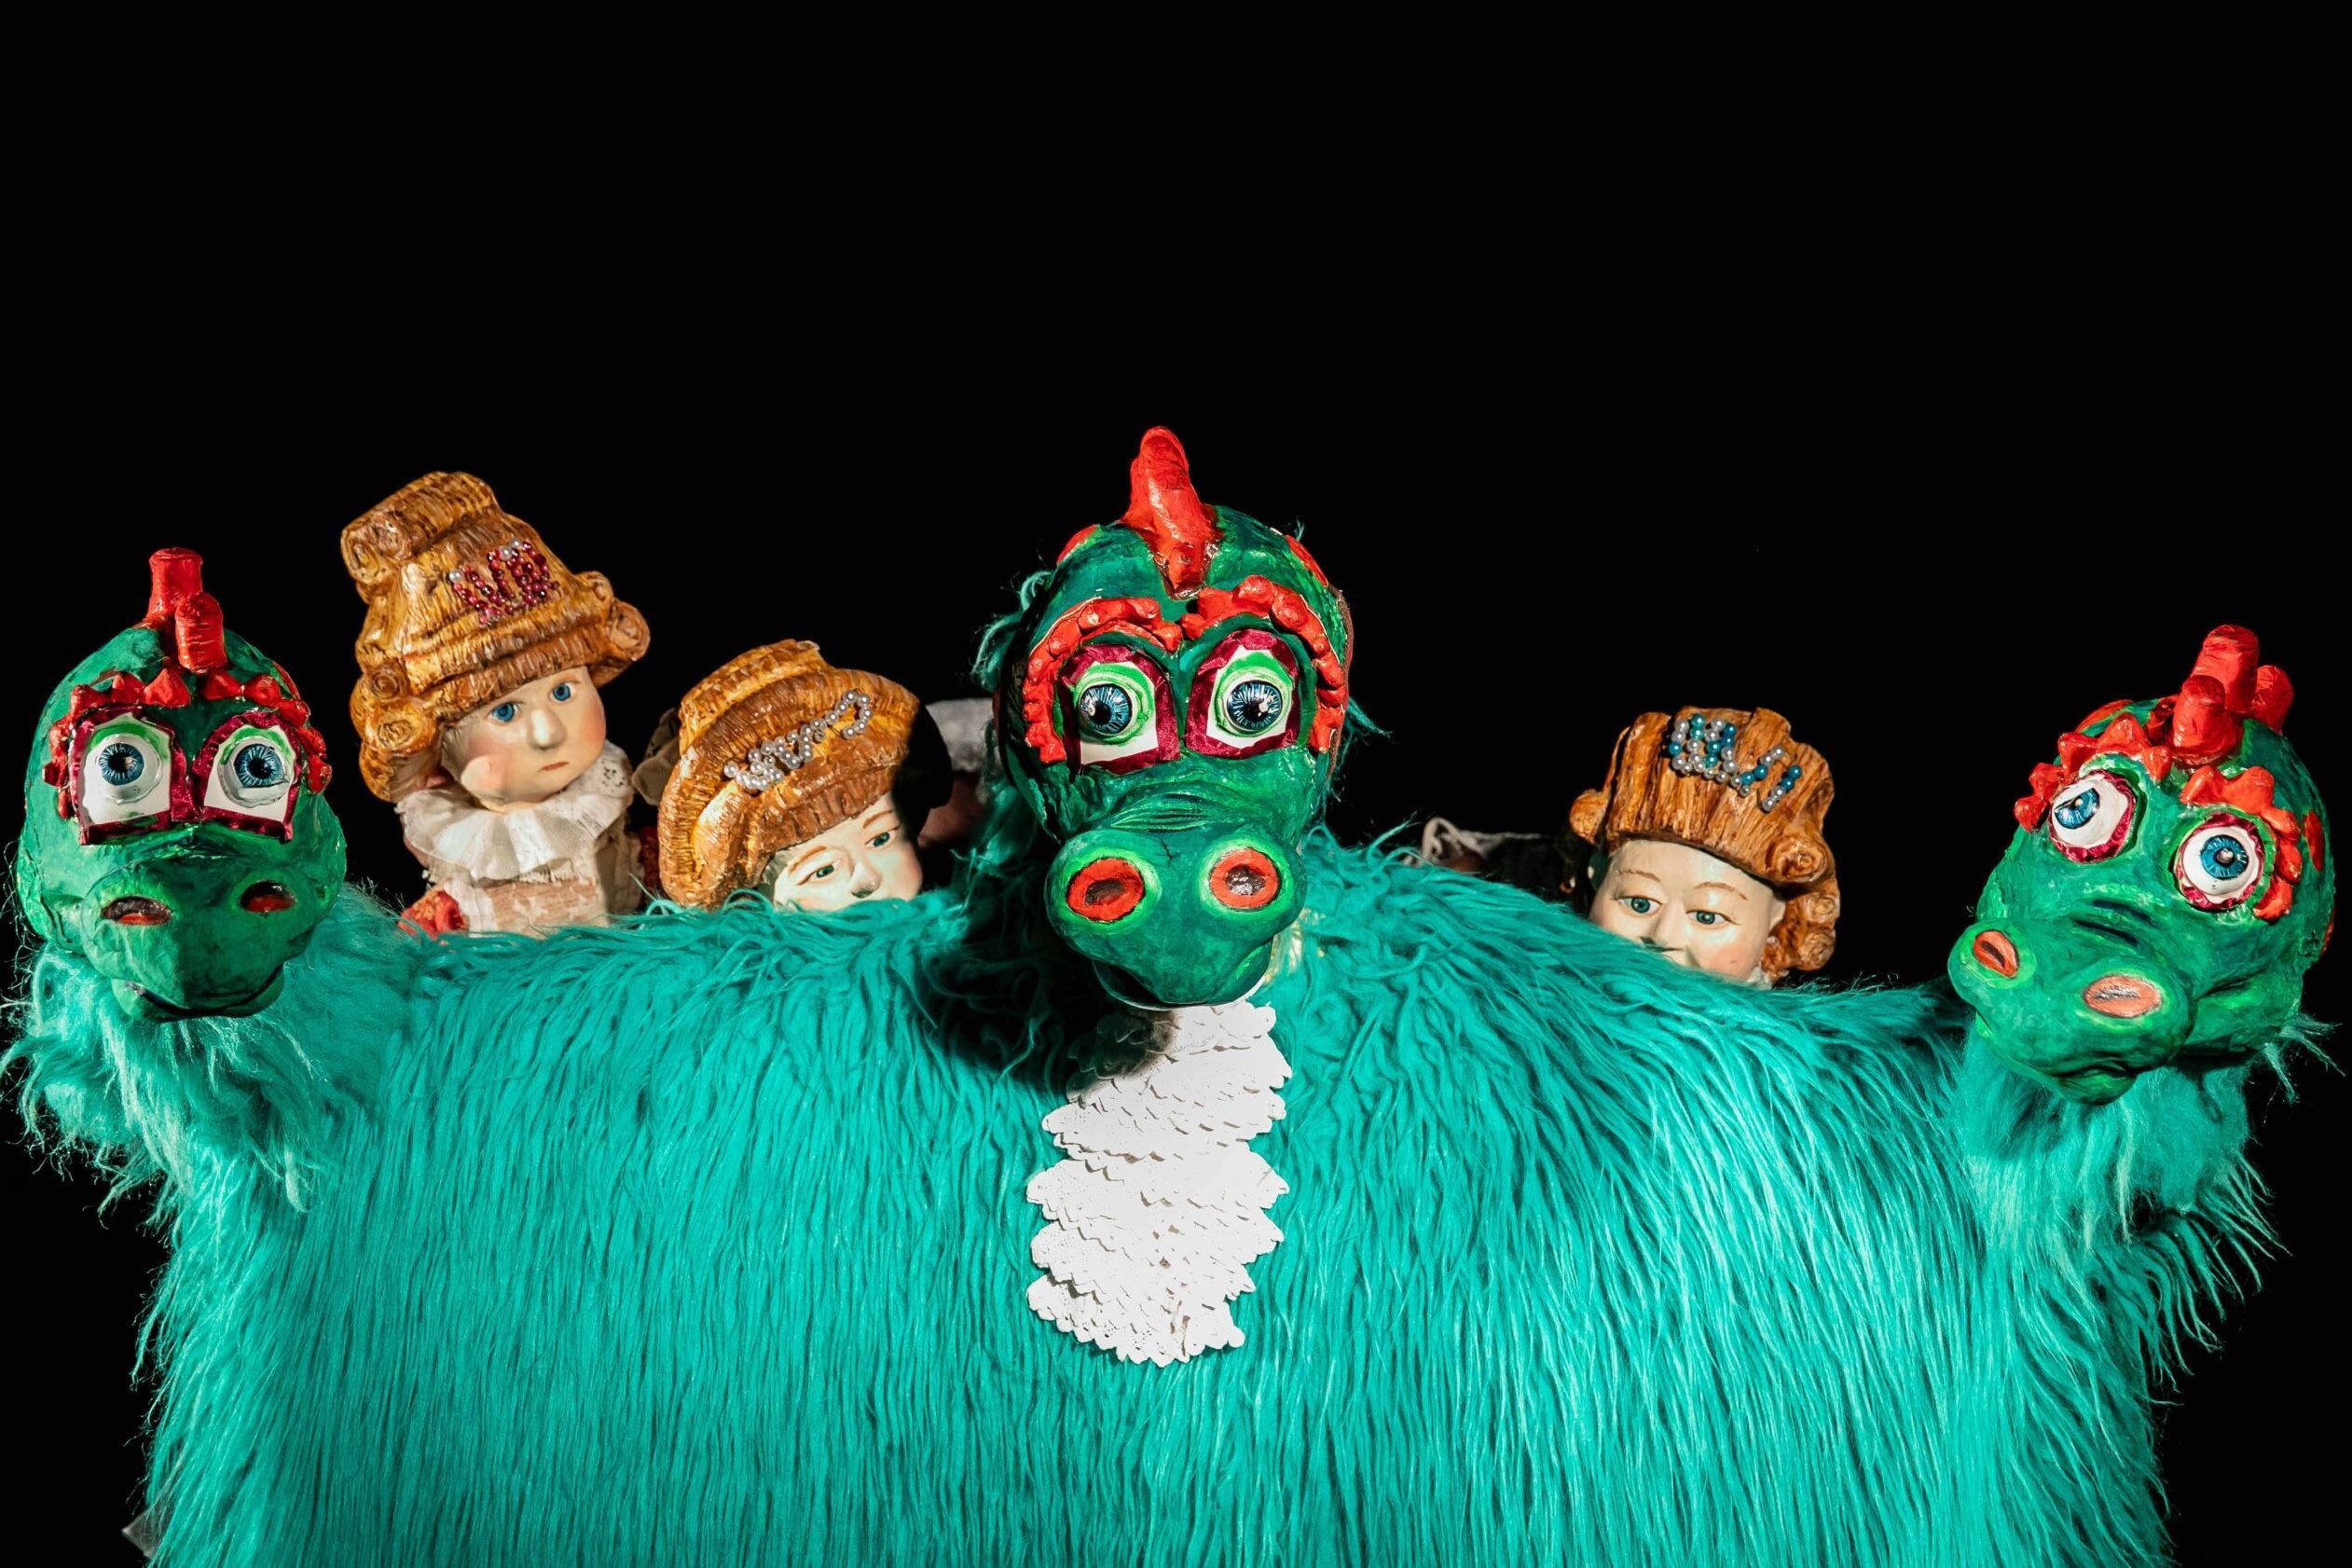 Poczuj magię teatru lalkowego! Festiwal pełen emocji, fantazji i niesamowitych opowieści